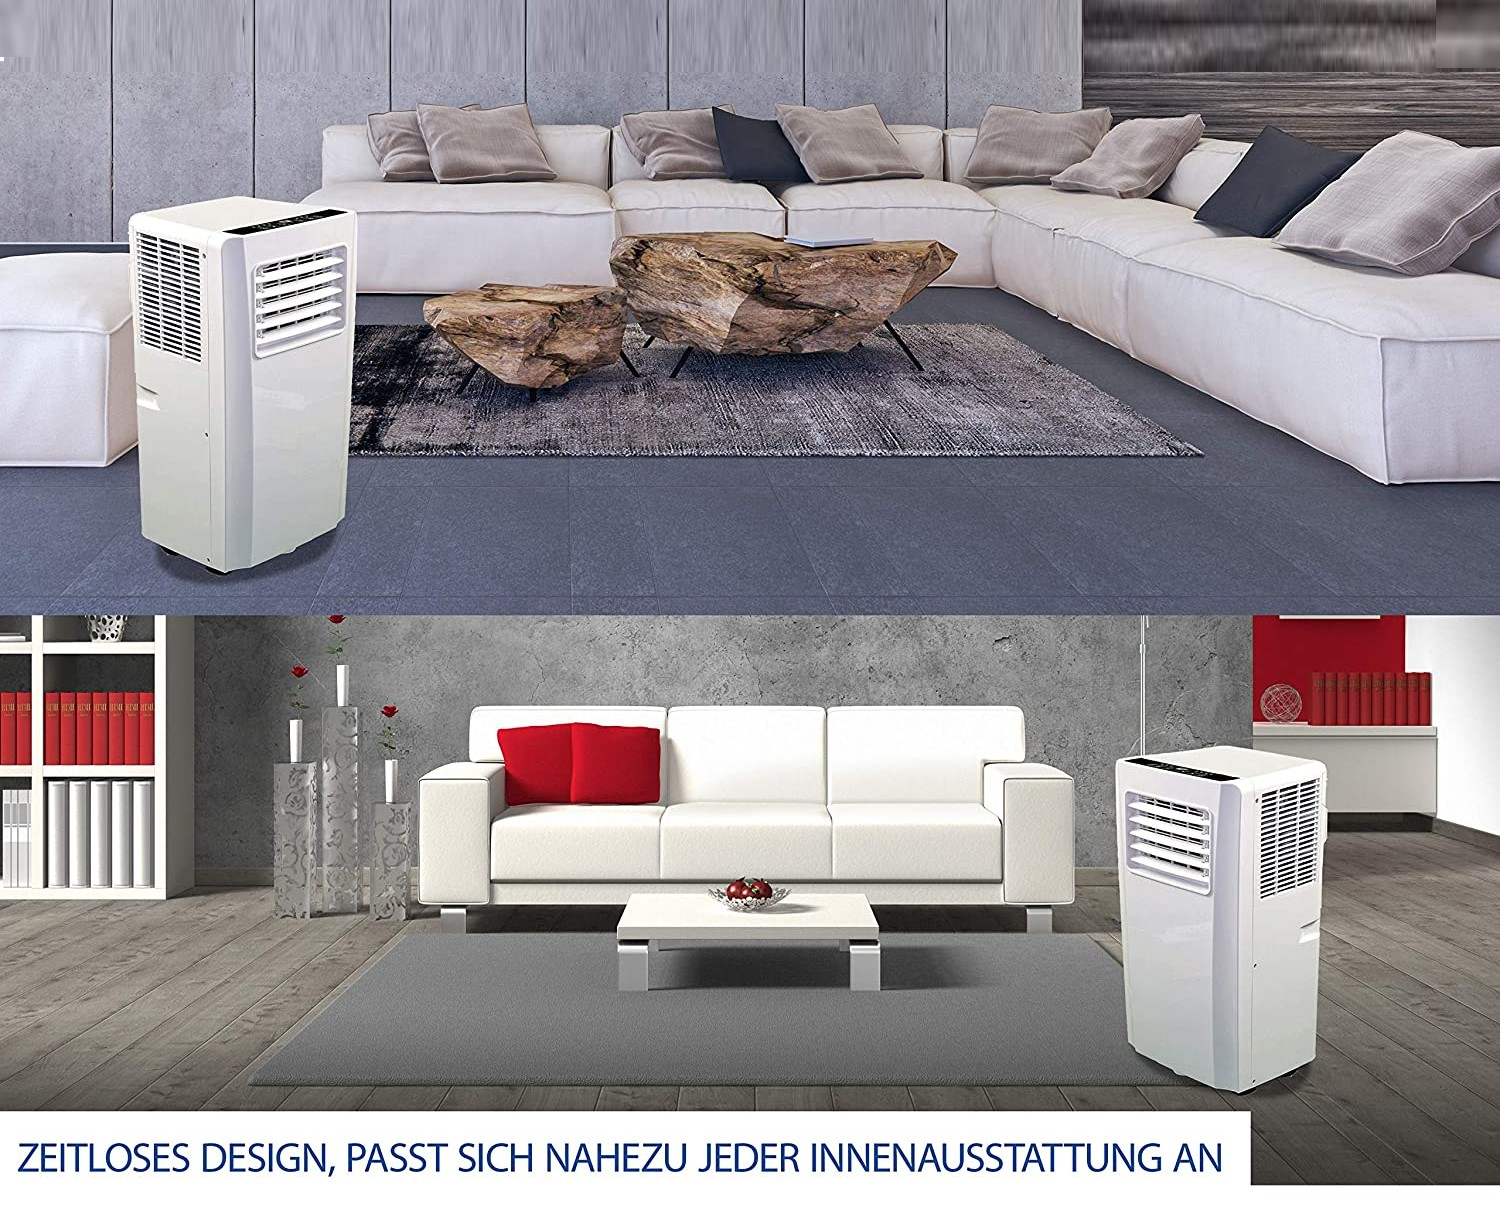 JUNG TV04 mobiles Klimagerät mit Raumgröße: 2,6 (Max. Weiß EEK: m², A) KW 75 Fernbedienung